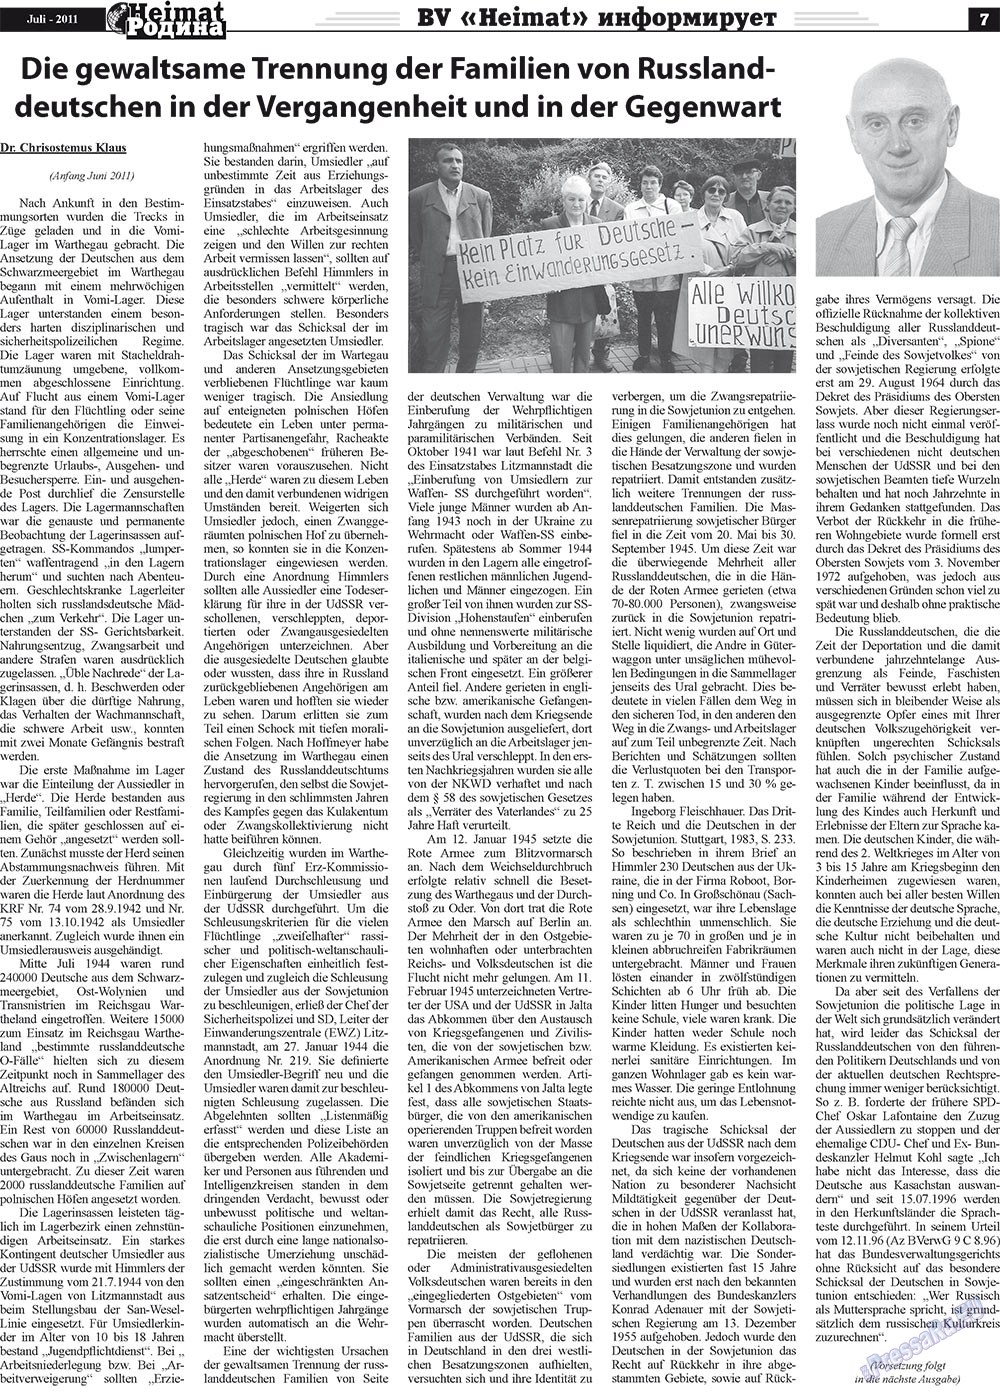 Heimat-Родина (газета). 2011 год, номер 7, стр. 7